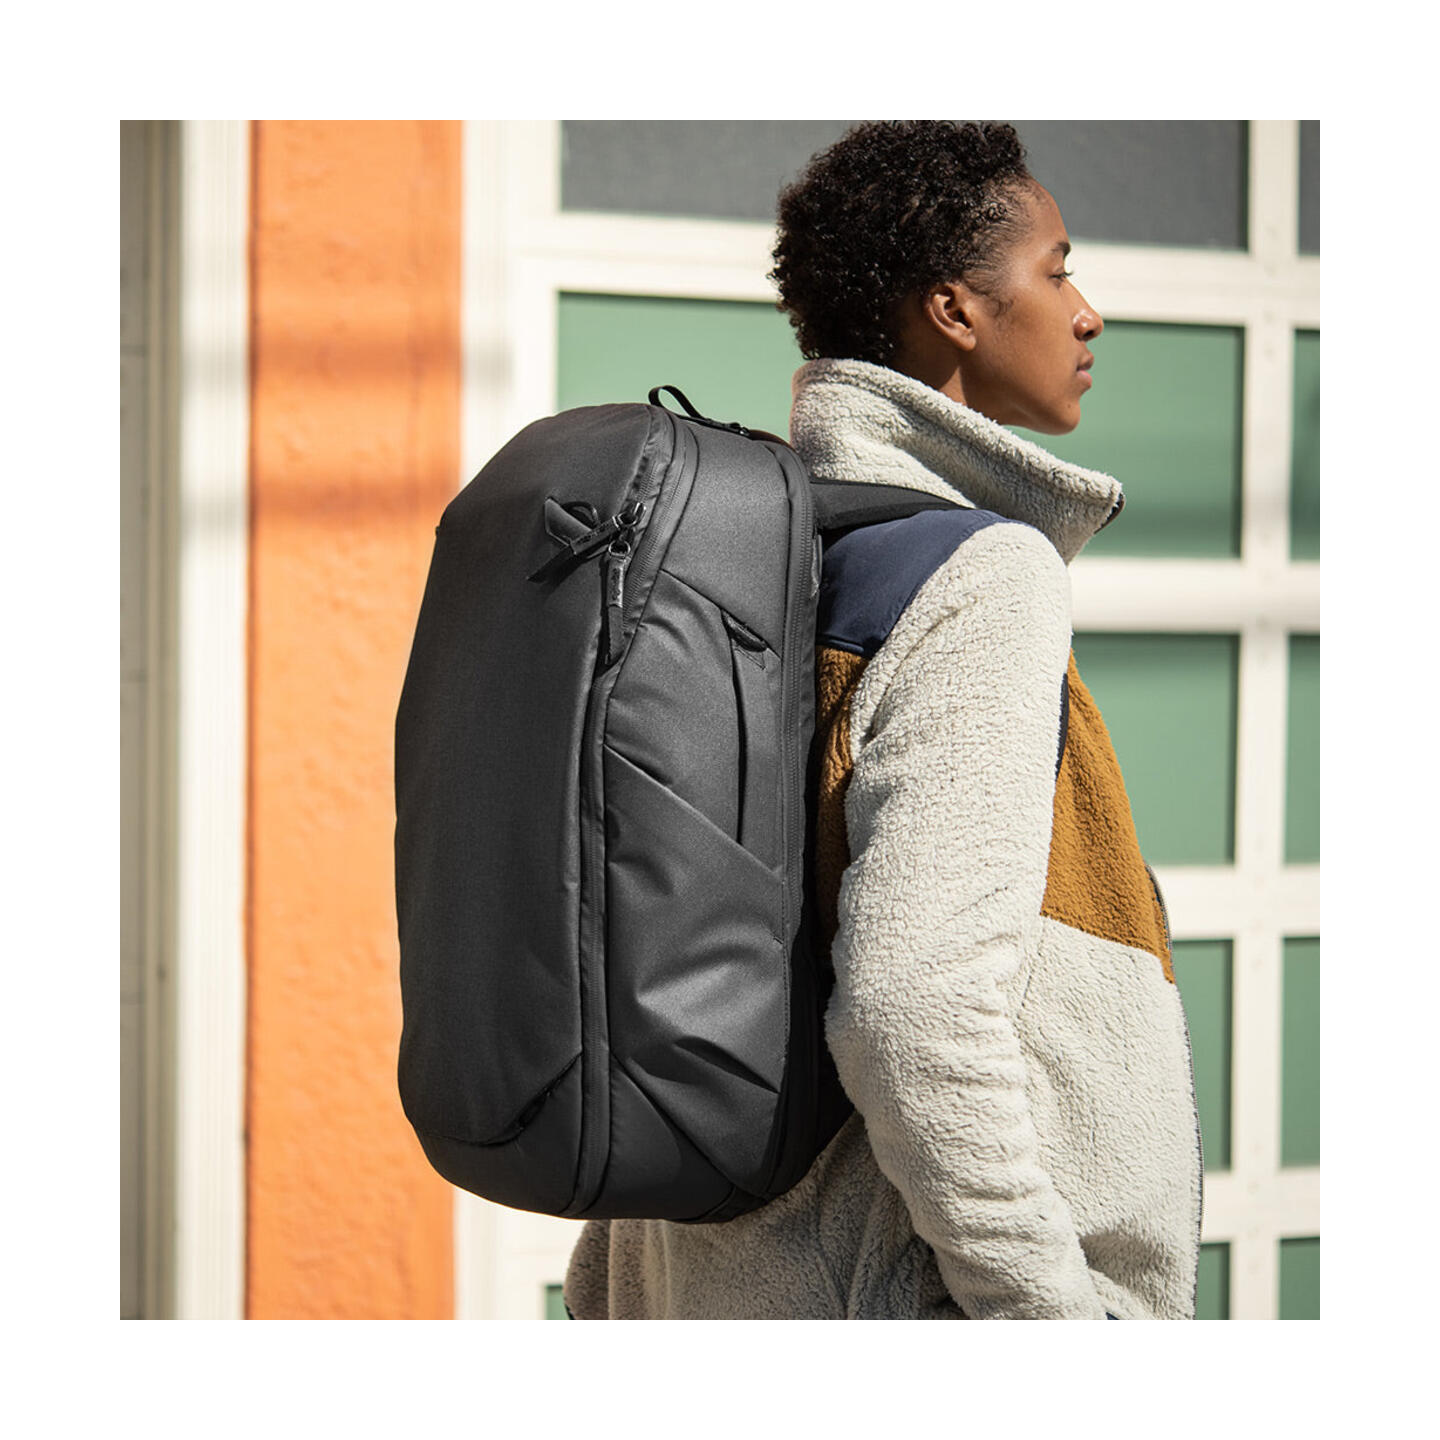 Peak Design Travel Backpack 30L : Schwarz